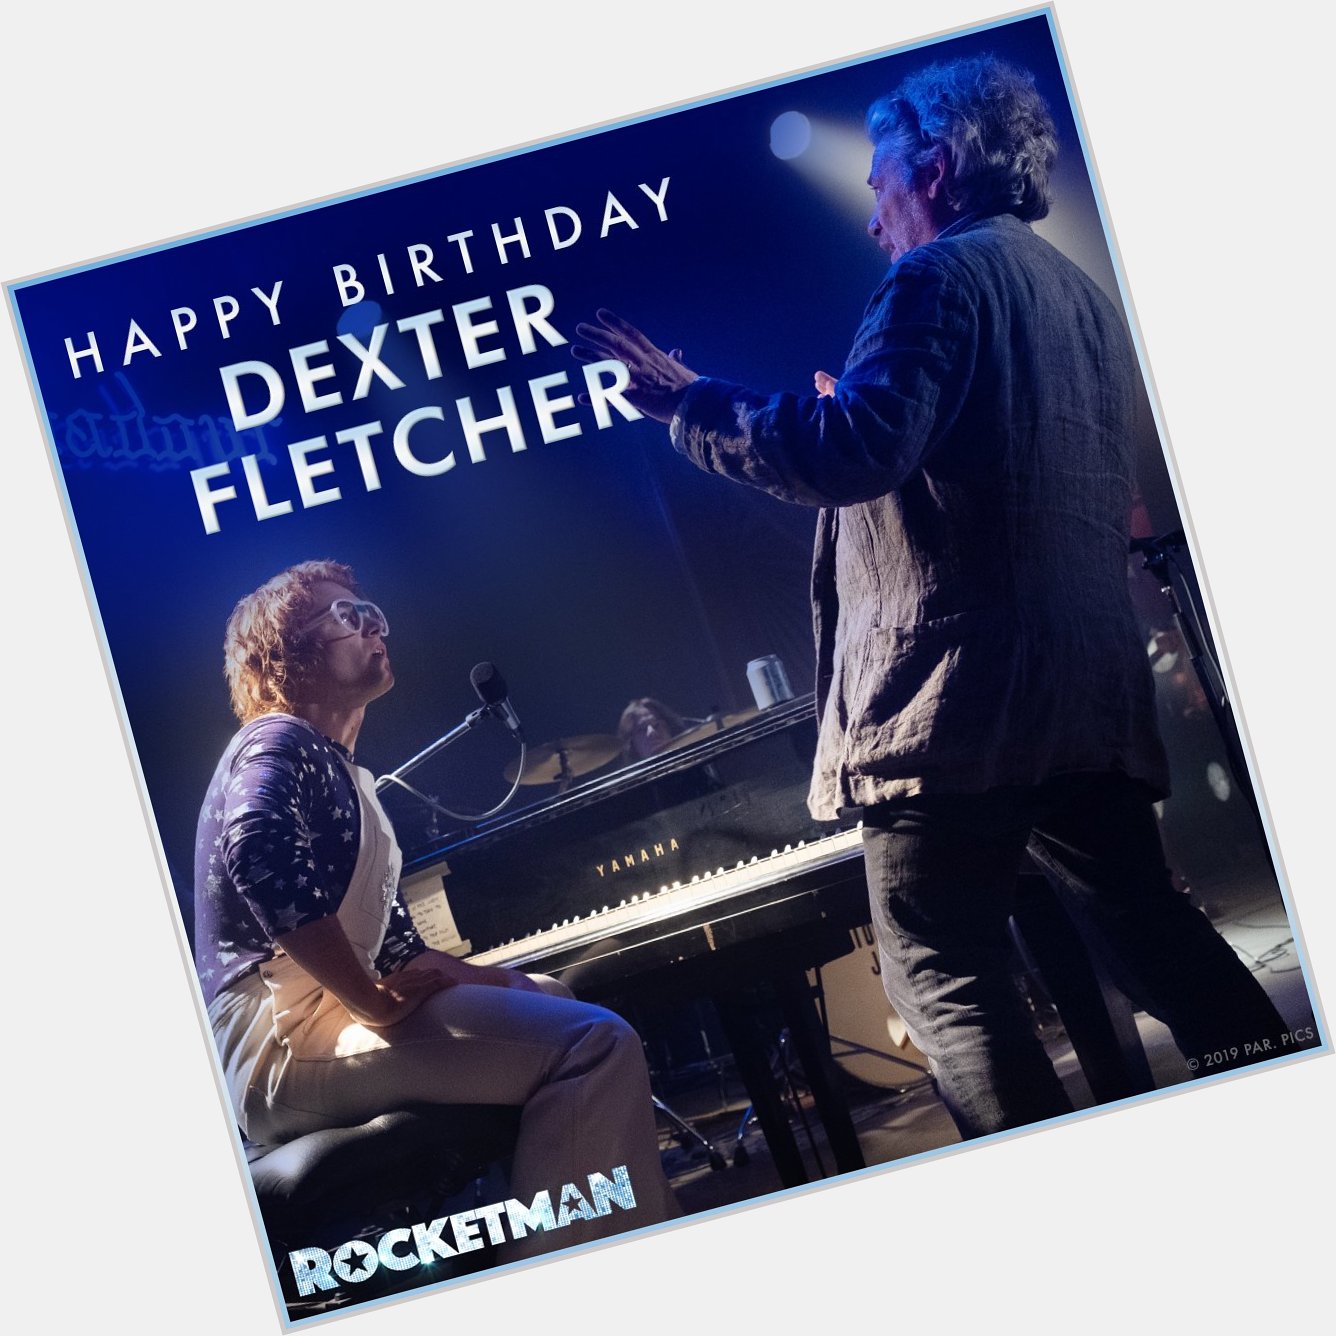 Happy Birthday Dexter Fletcher, regisseur van 30 mei in de bioscoop. 